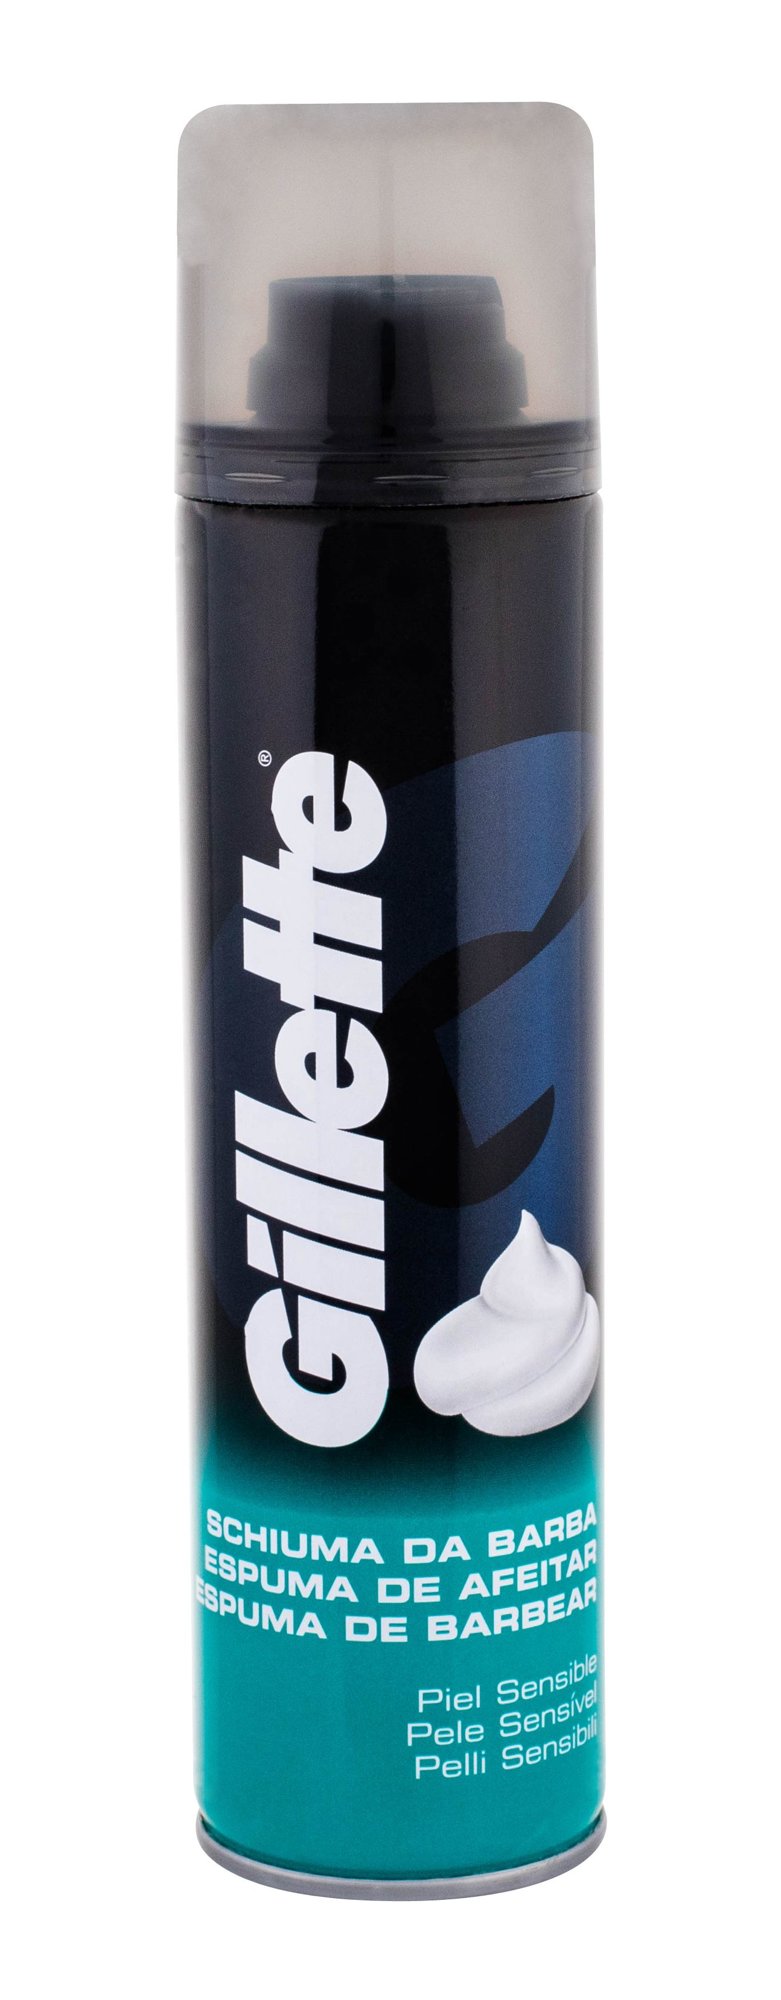 Gillette Shave Foam Sensitive